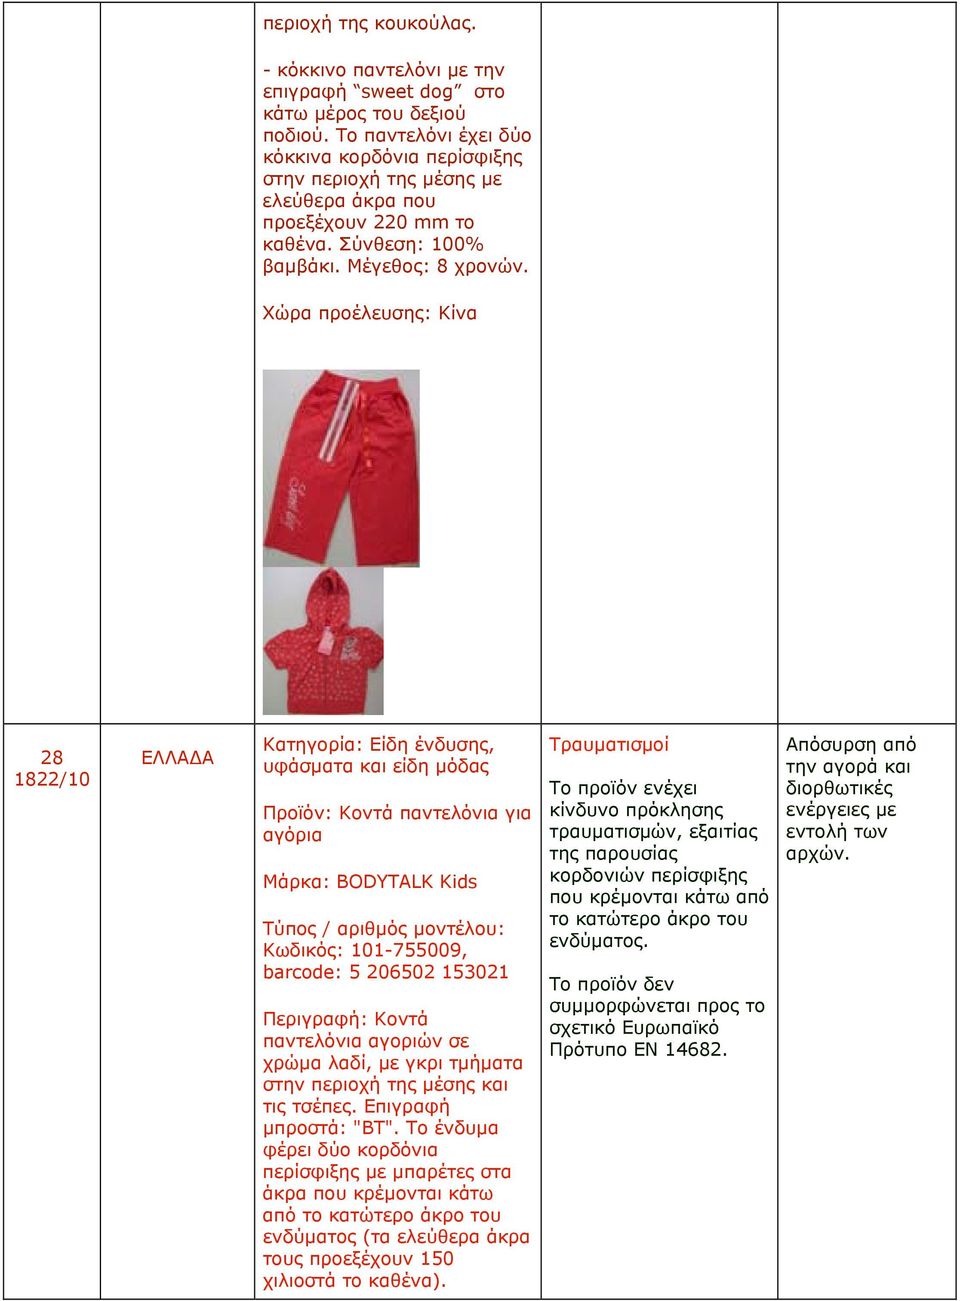 28 1822/10 Προϊόν: Κοντά παντελόνια για αγόρια Μάρκα: BODYTALK Kids Κωδικός: 101-755009, barcode: 5 206502 153021 Περιγραφή: Κοντά παντελόνια αγοριών σε χρώμα λαδί, με γκρι τμήματα στην περιοχή της